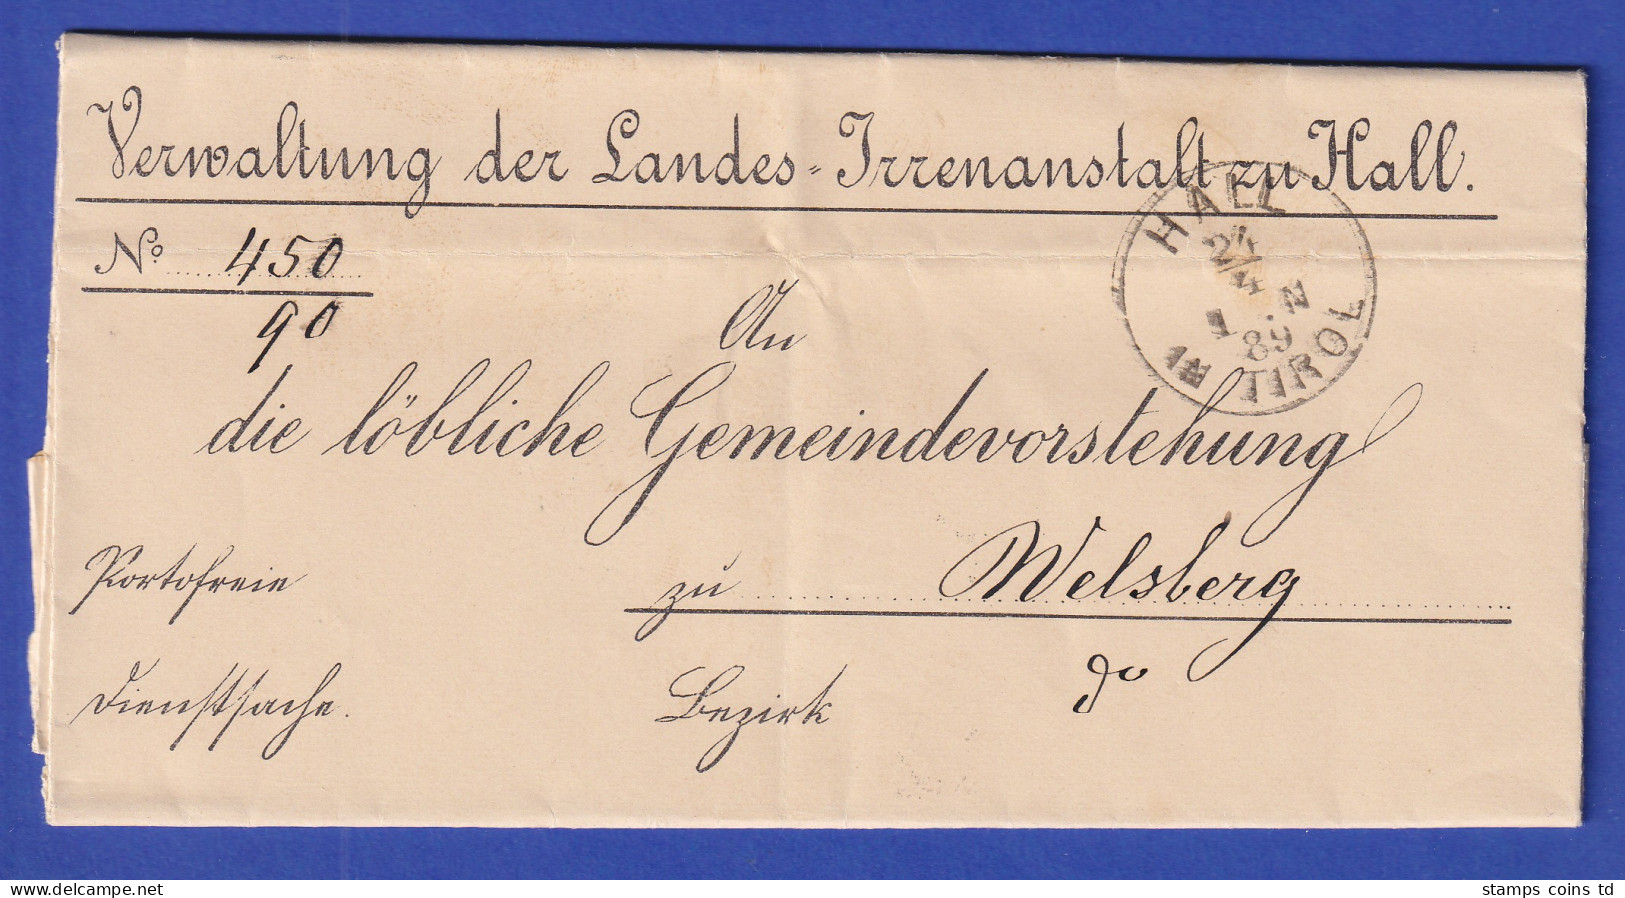 Österreich Dienstbrief Mit Rundstempel HALL IN TIROL 1889 - ...-1850 Prephilately